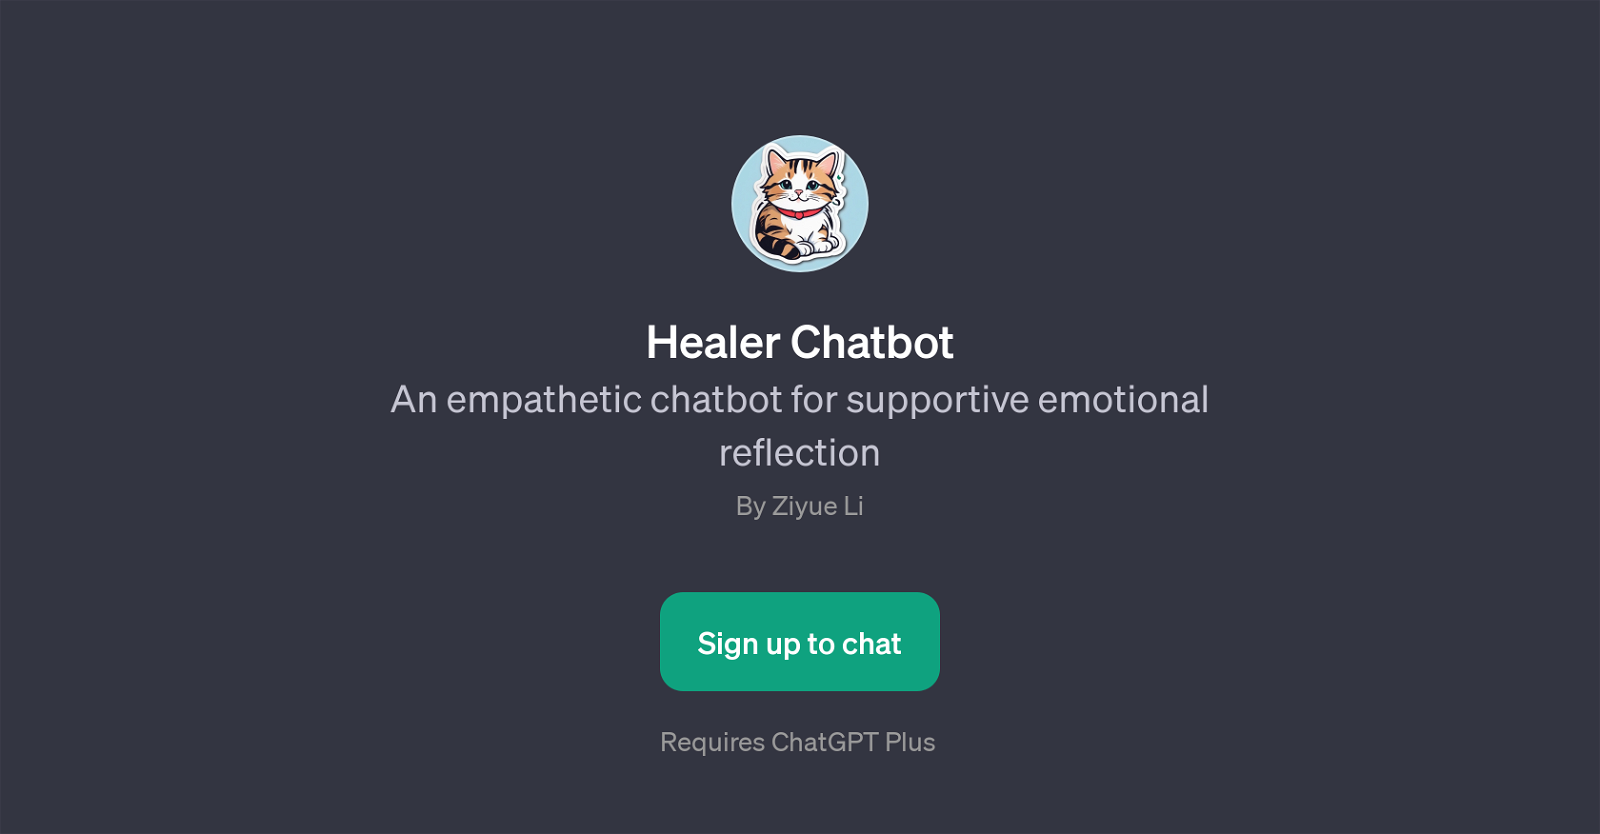 Healer Chatbot website